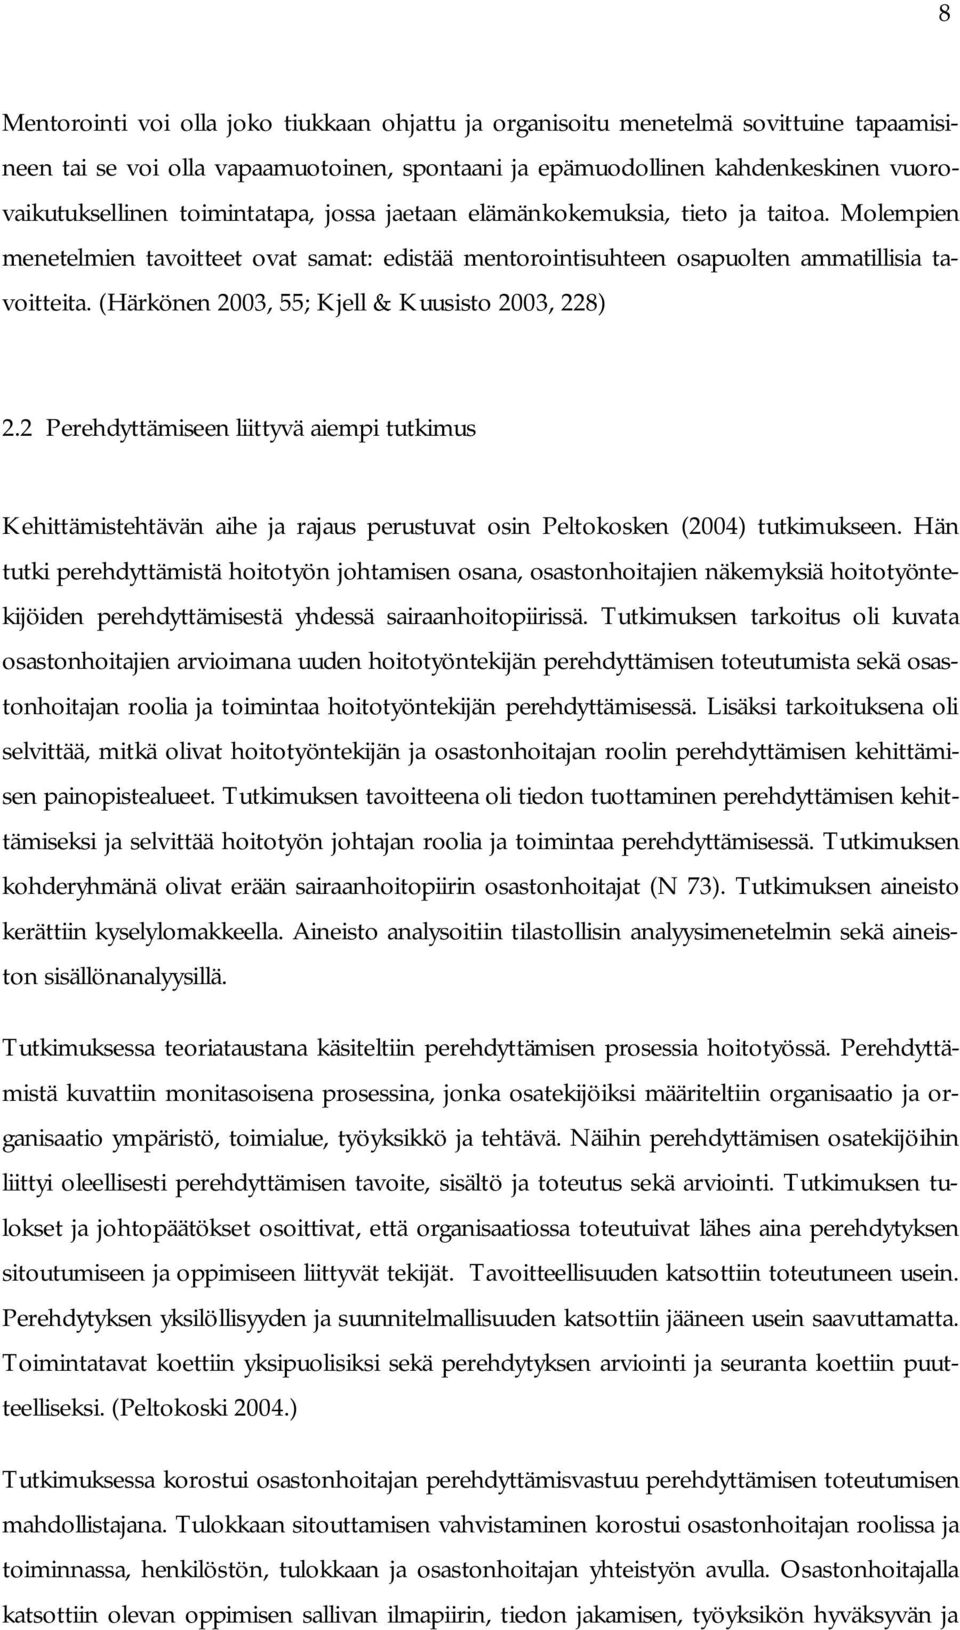 (Härkönen 2003, 55; Kjell & Kuusisto 2003, 228) 2.2 Perehdyttämiseen liittyvä aiempi tutkimus Kehittämistehtävän aihe ja rajaus perustuvat osin Peltokosken (2004) tutkimukseen.